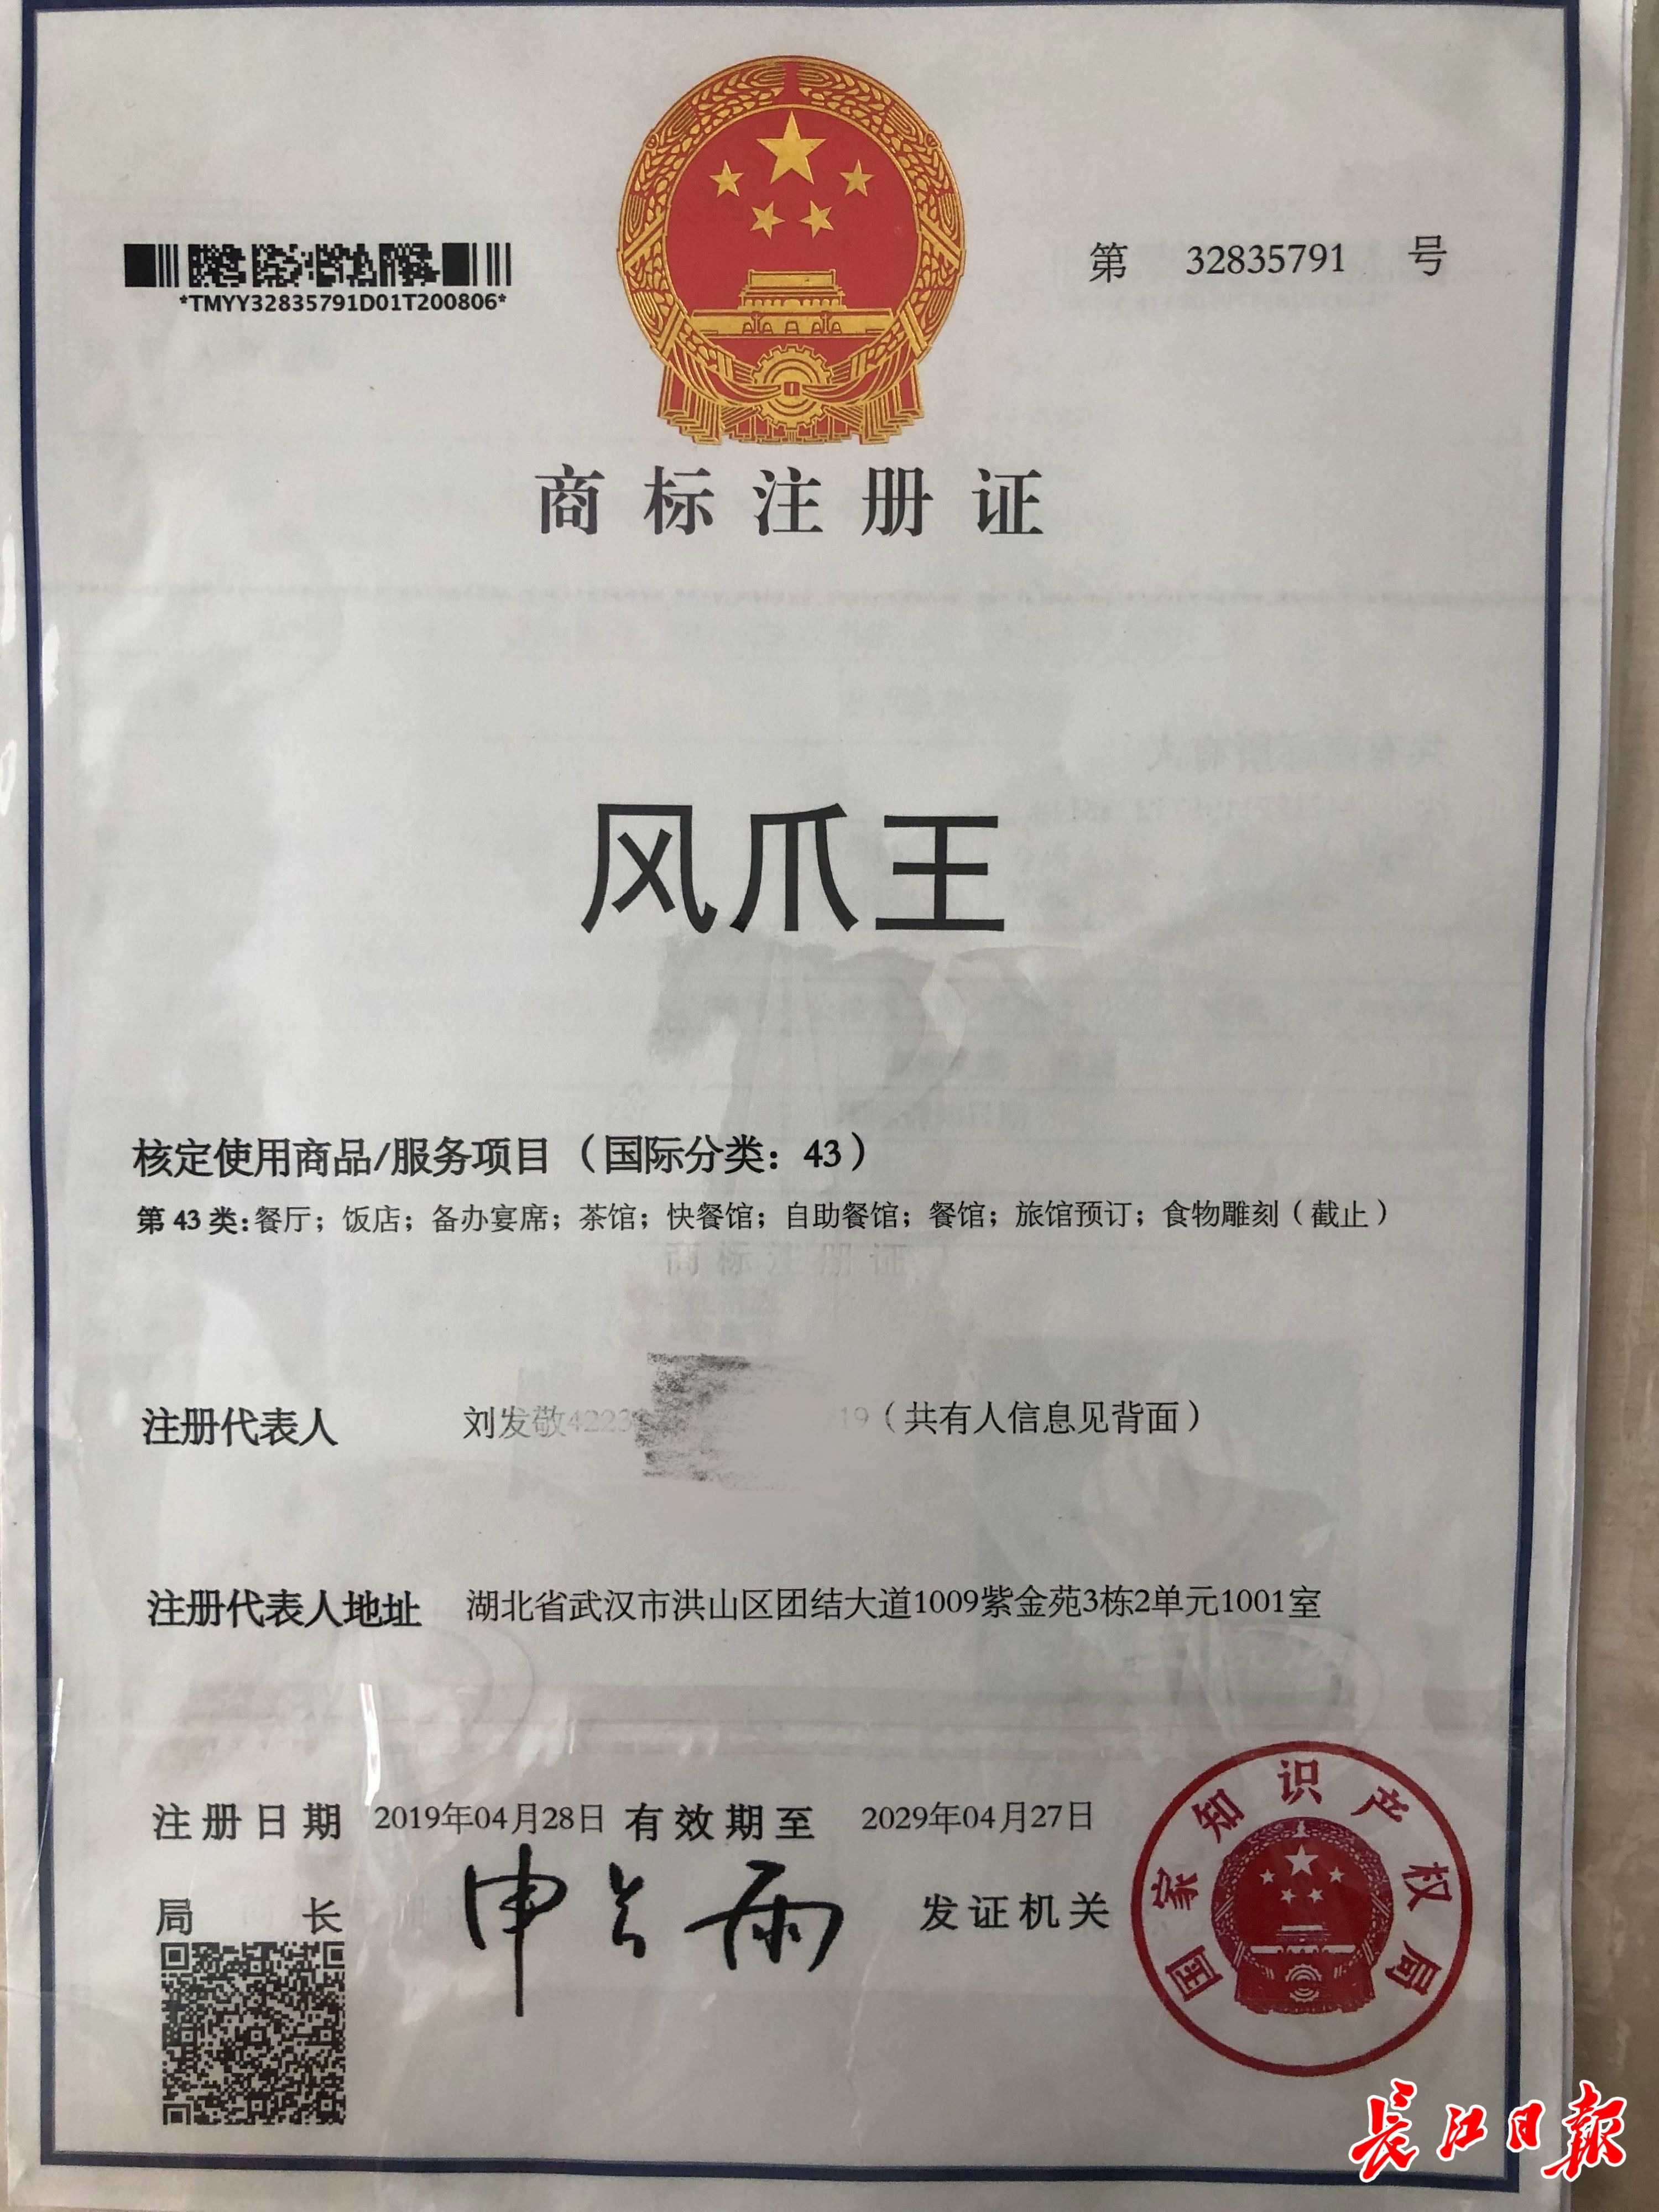 凤爪王烧烤是注册商标